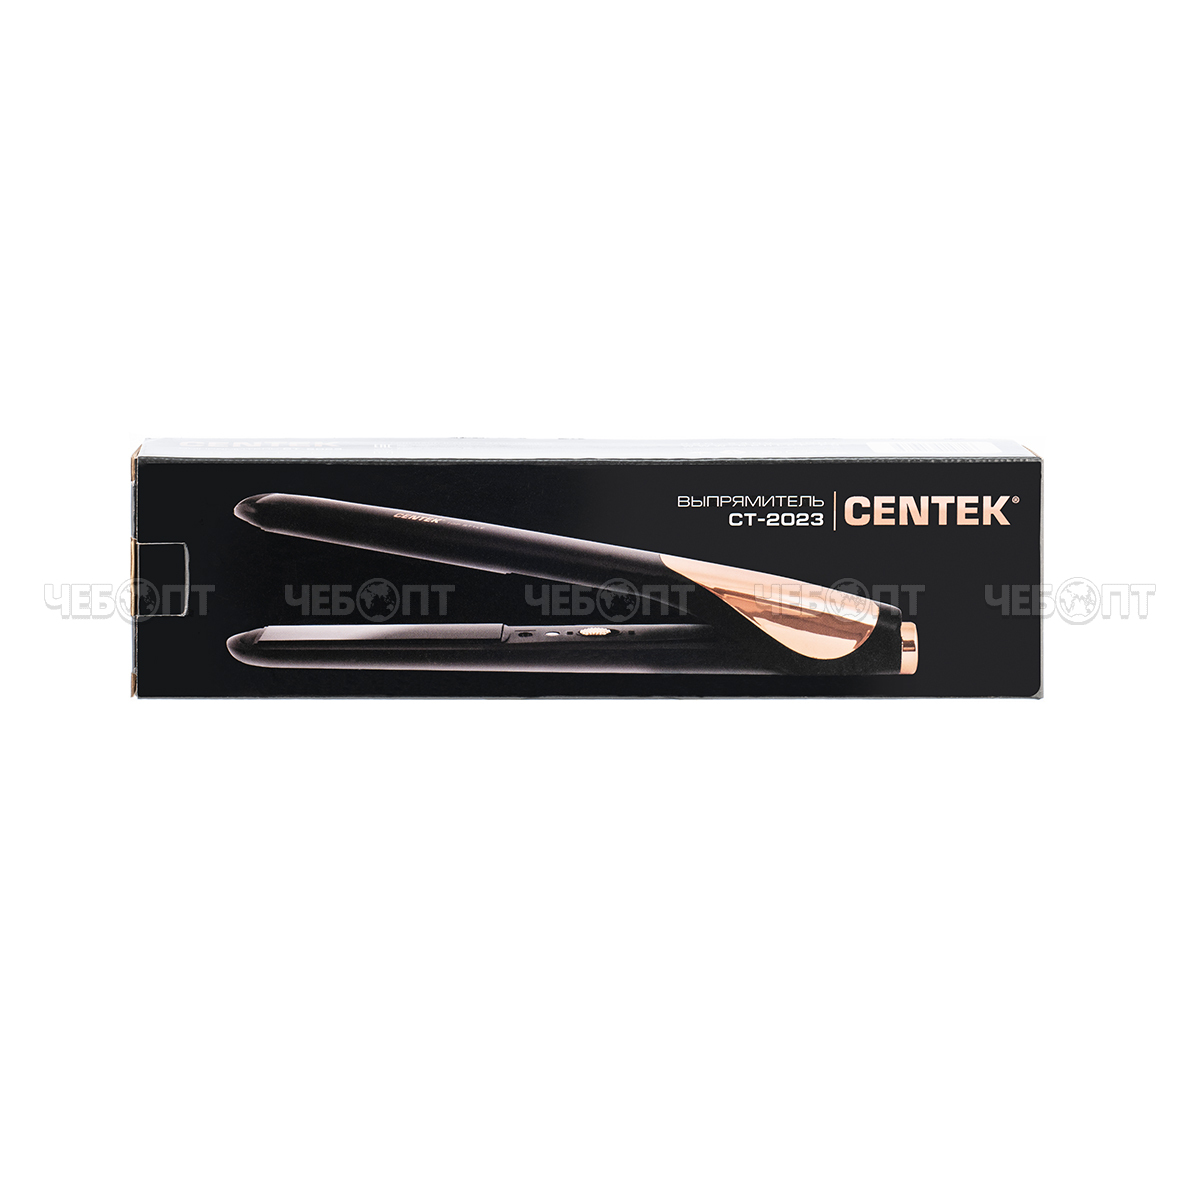 Щипцы для волос CENTEK CT-2023 керамические пластины, макс темп 200 °C, быстрый нагрев мощн. 25 Вт [24]. ЧЕБОПТ.